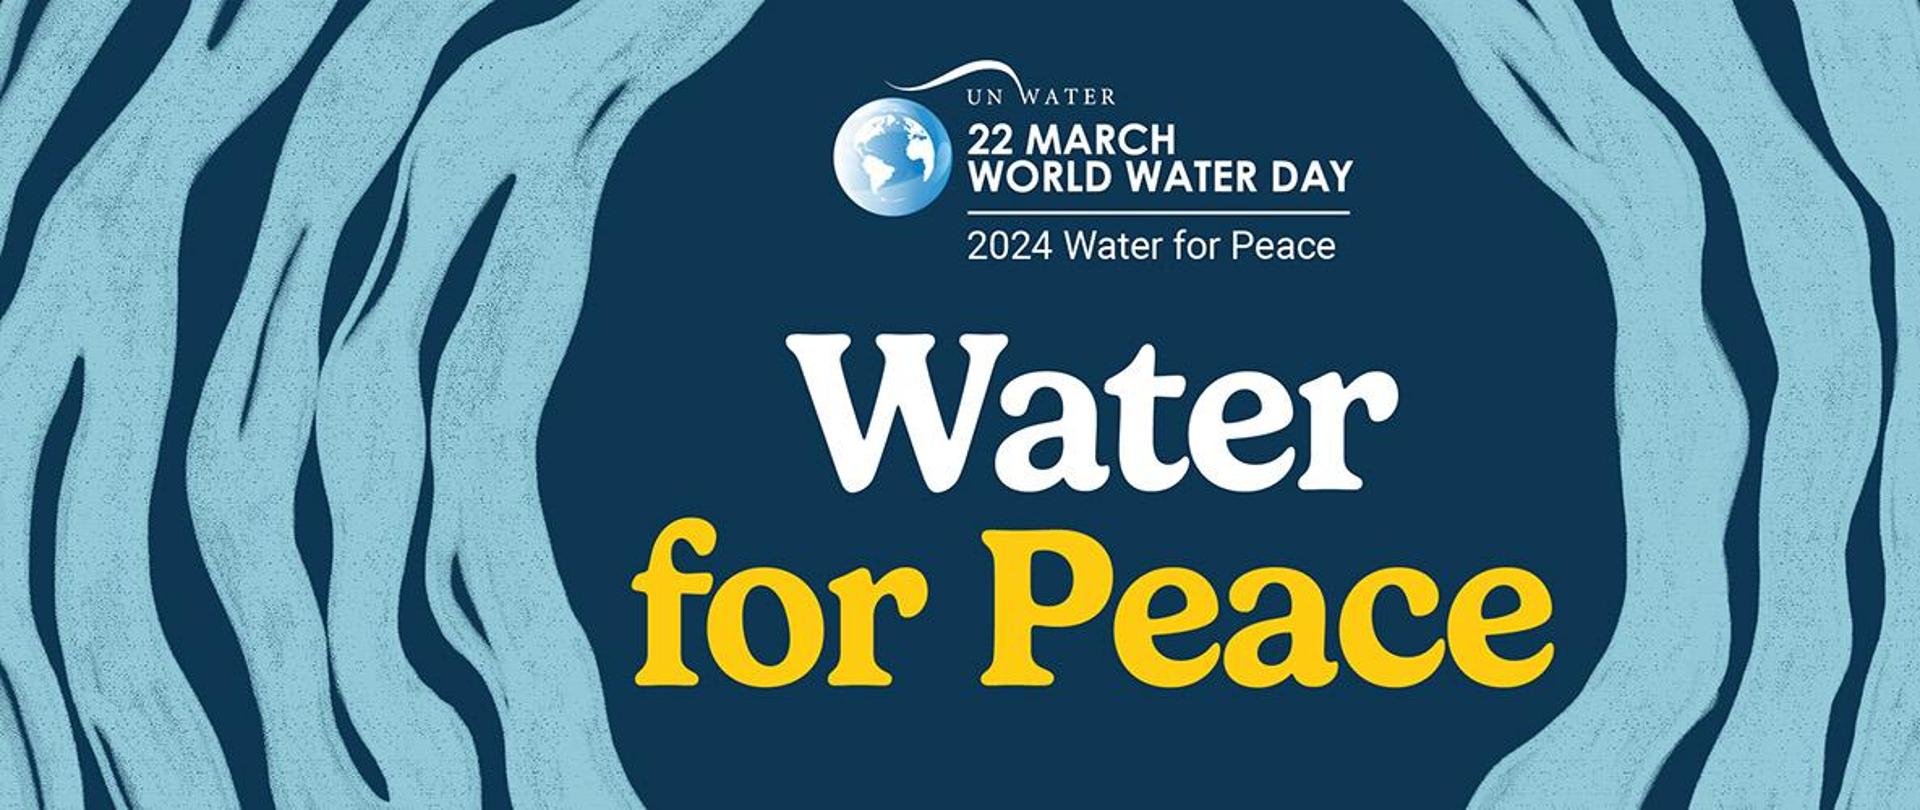 Kręgi na wodzie, w środku których znajduje się logo Światowego dnia wody 2024 oraz napis Water for Peace